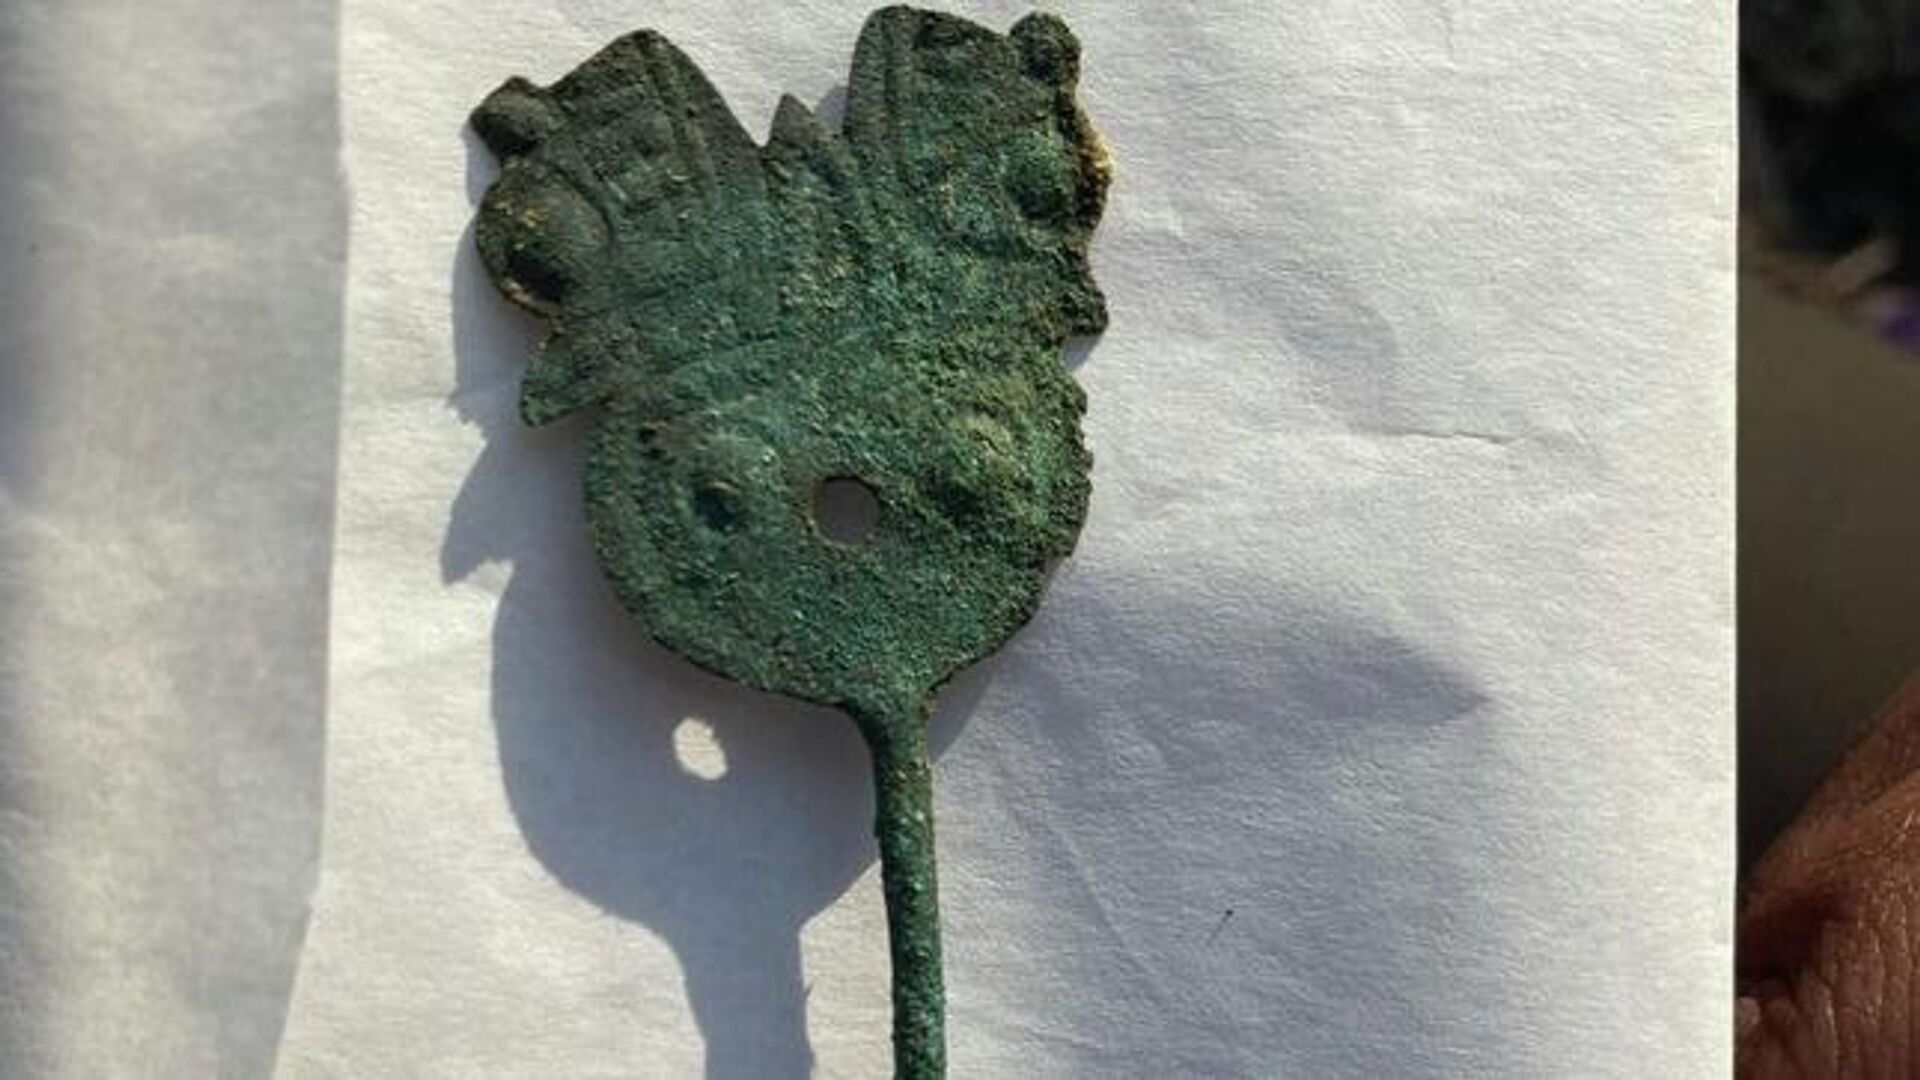 Artefato encontrado entre Restos de ossos de crianças na colina Santa Apolonia, Peru - Sputnik Brasil, 1920, 19.09.2022